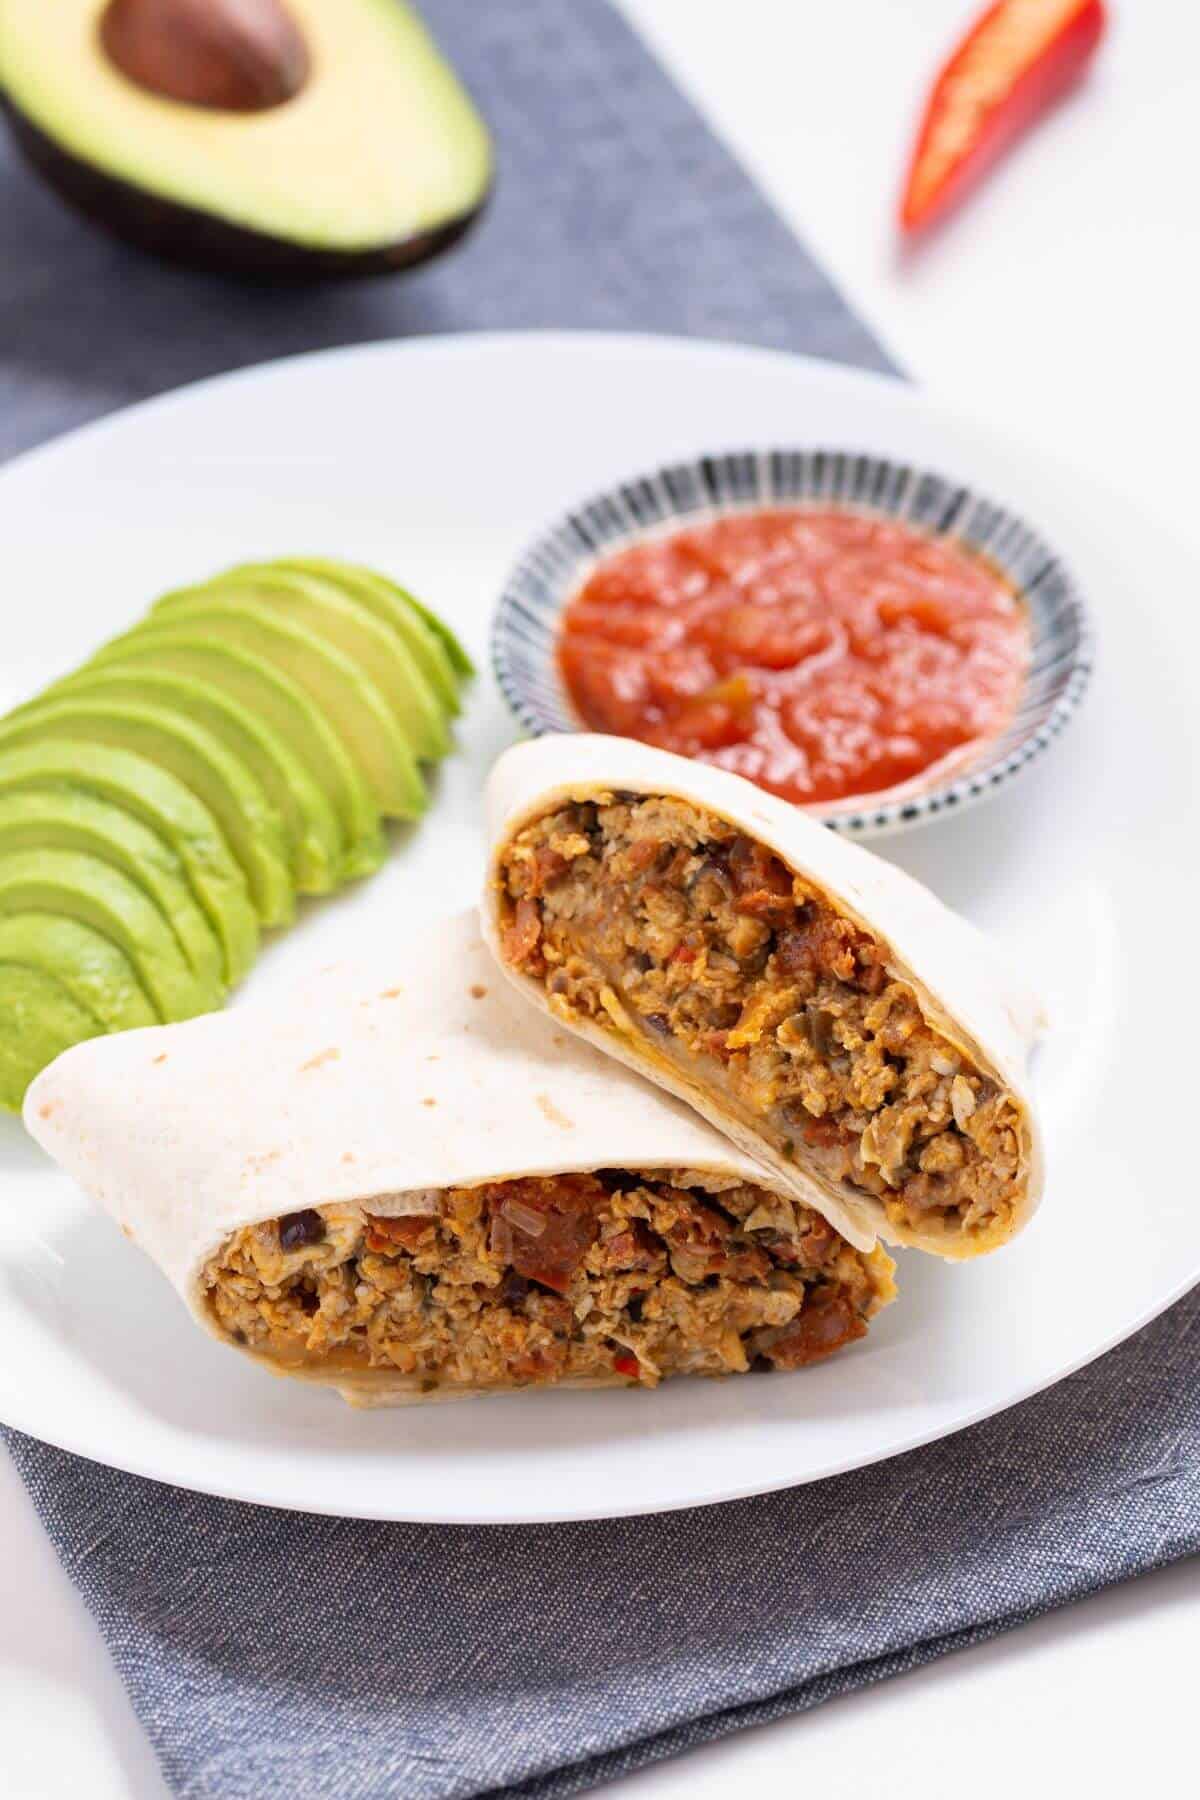 Breakfast chorizo burrito cut in half with avocado and salsa.